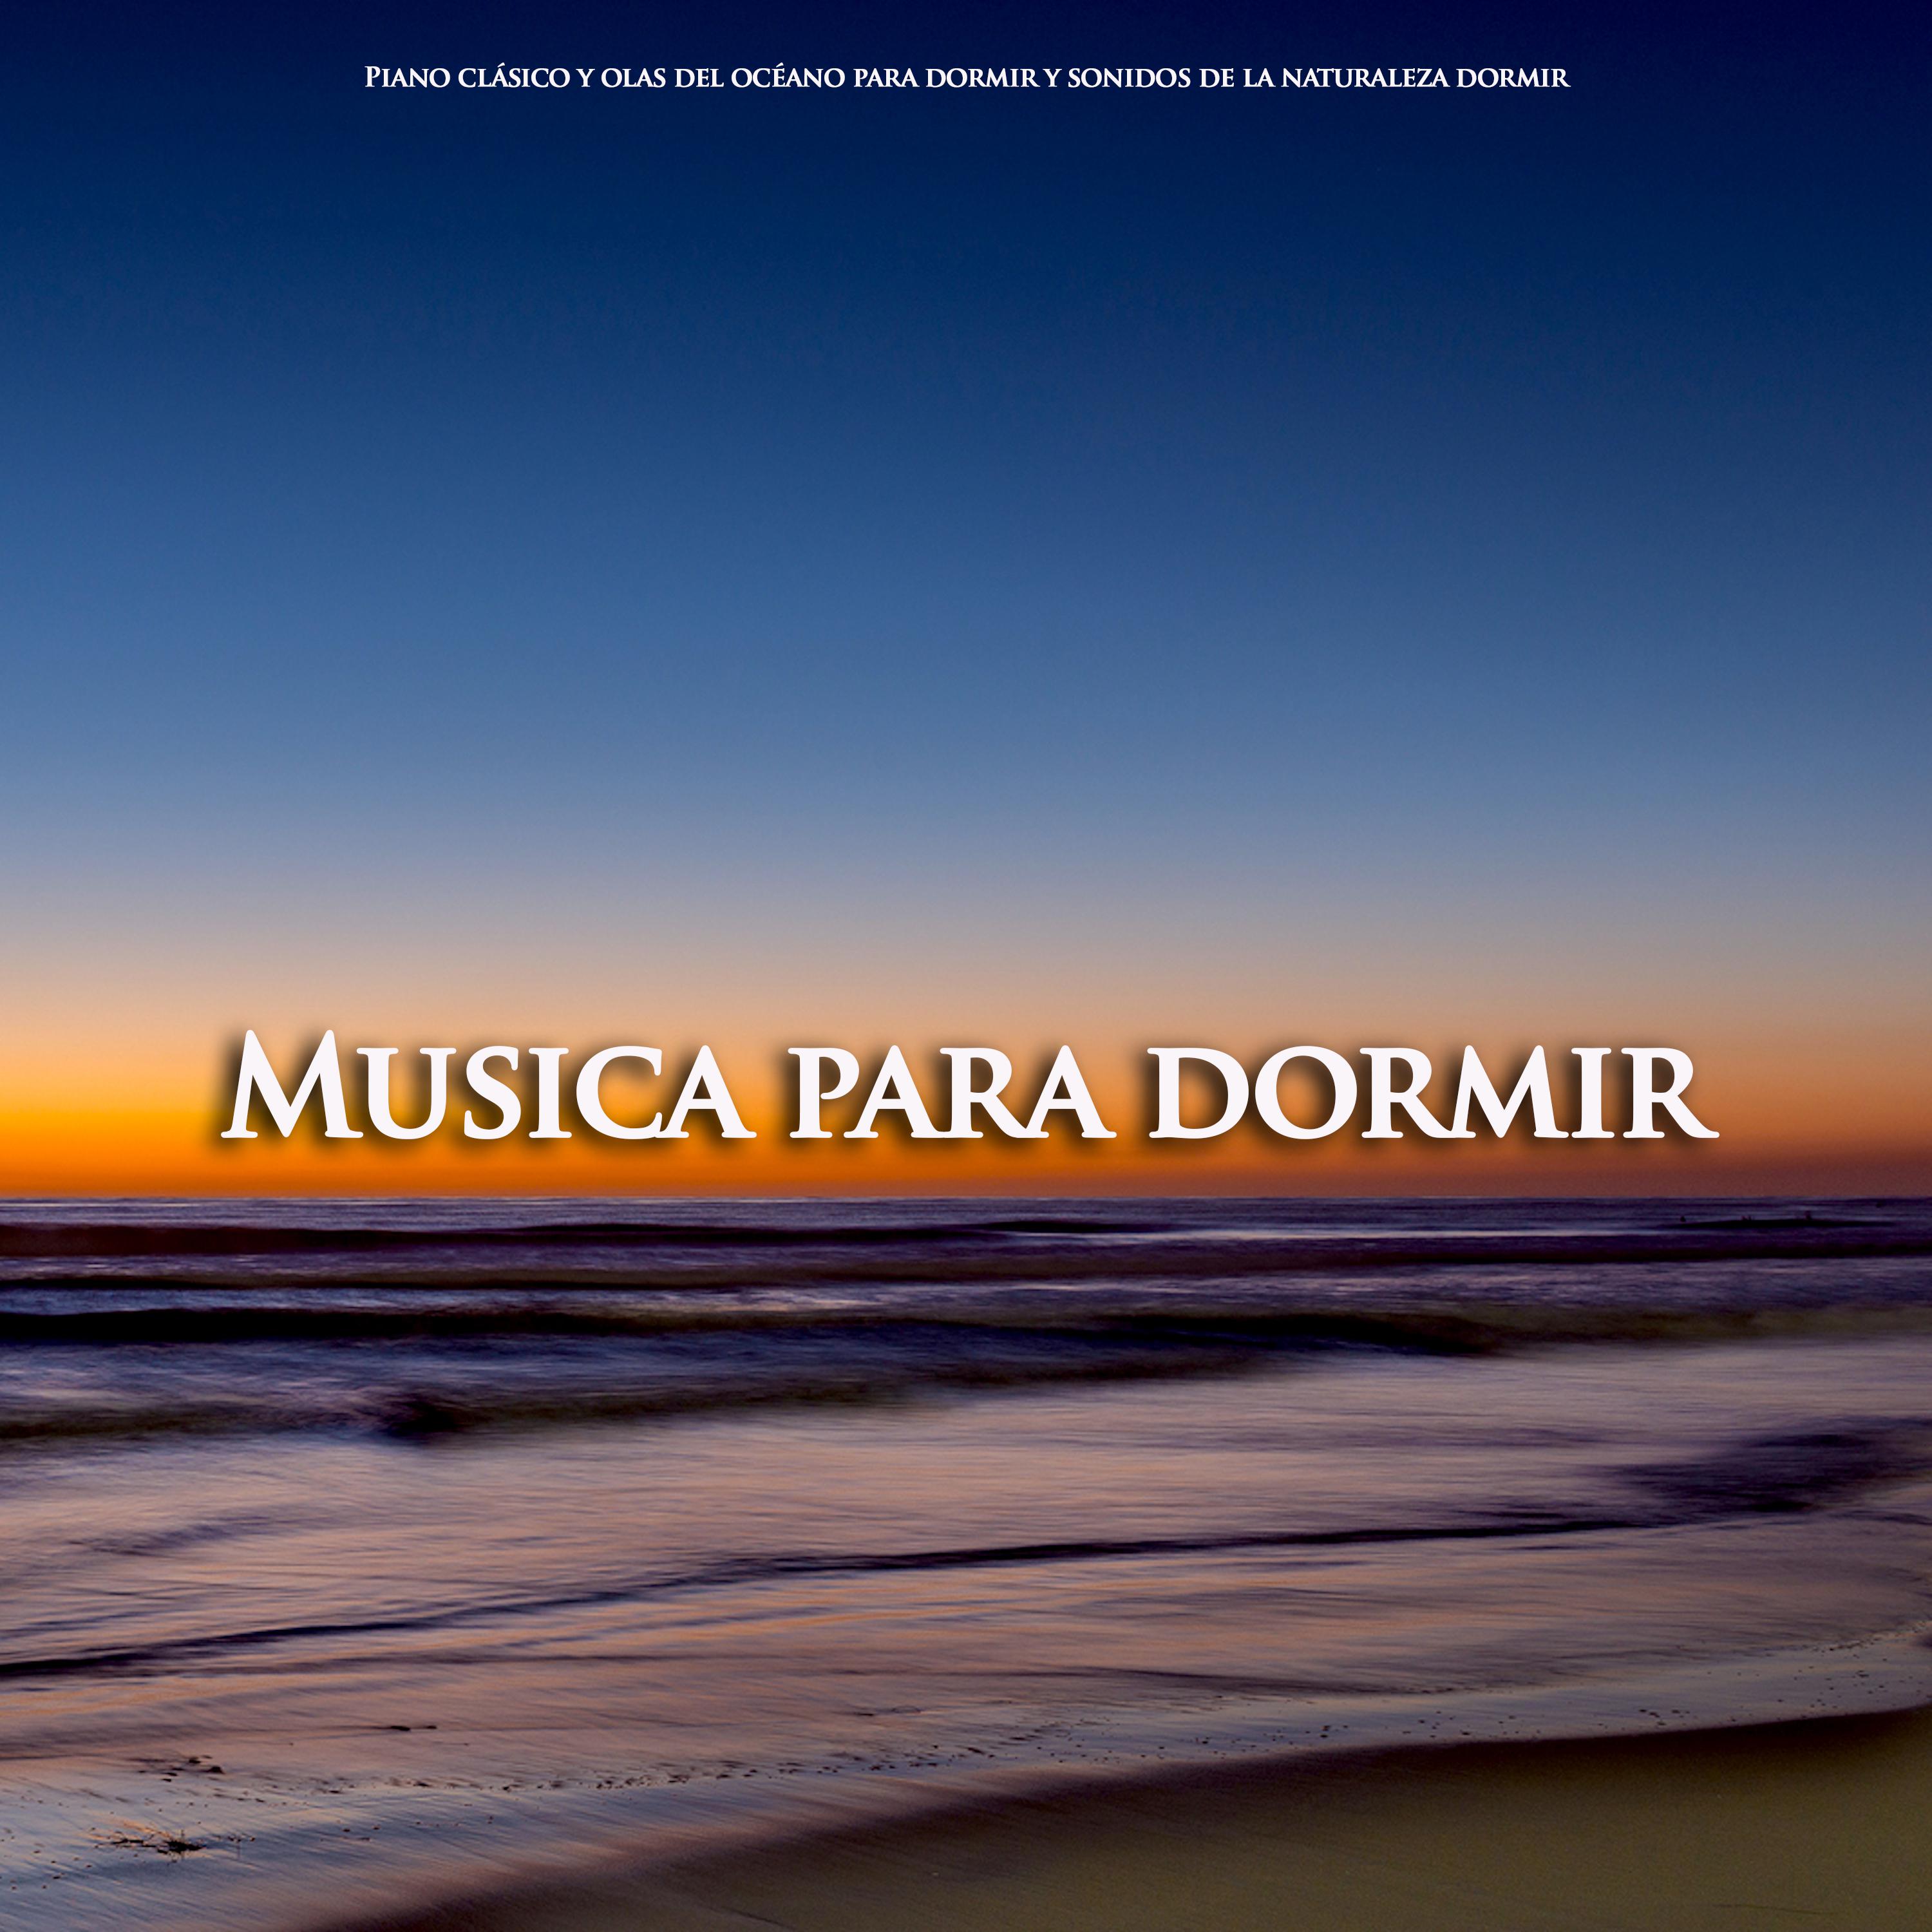 Allegro Piano Sonata - Mozart - Musica para dormir - Olas del océano para dormir - Piano clasico